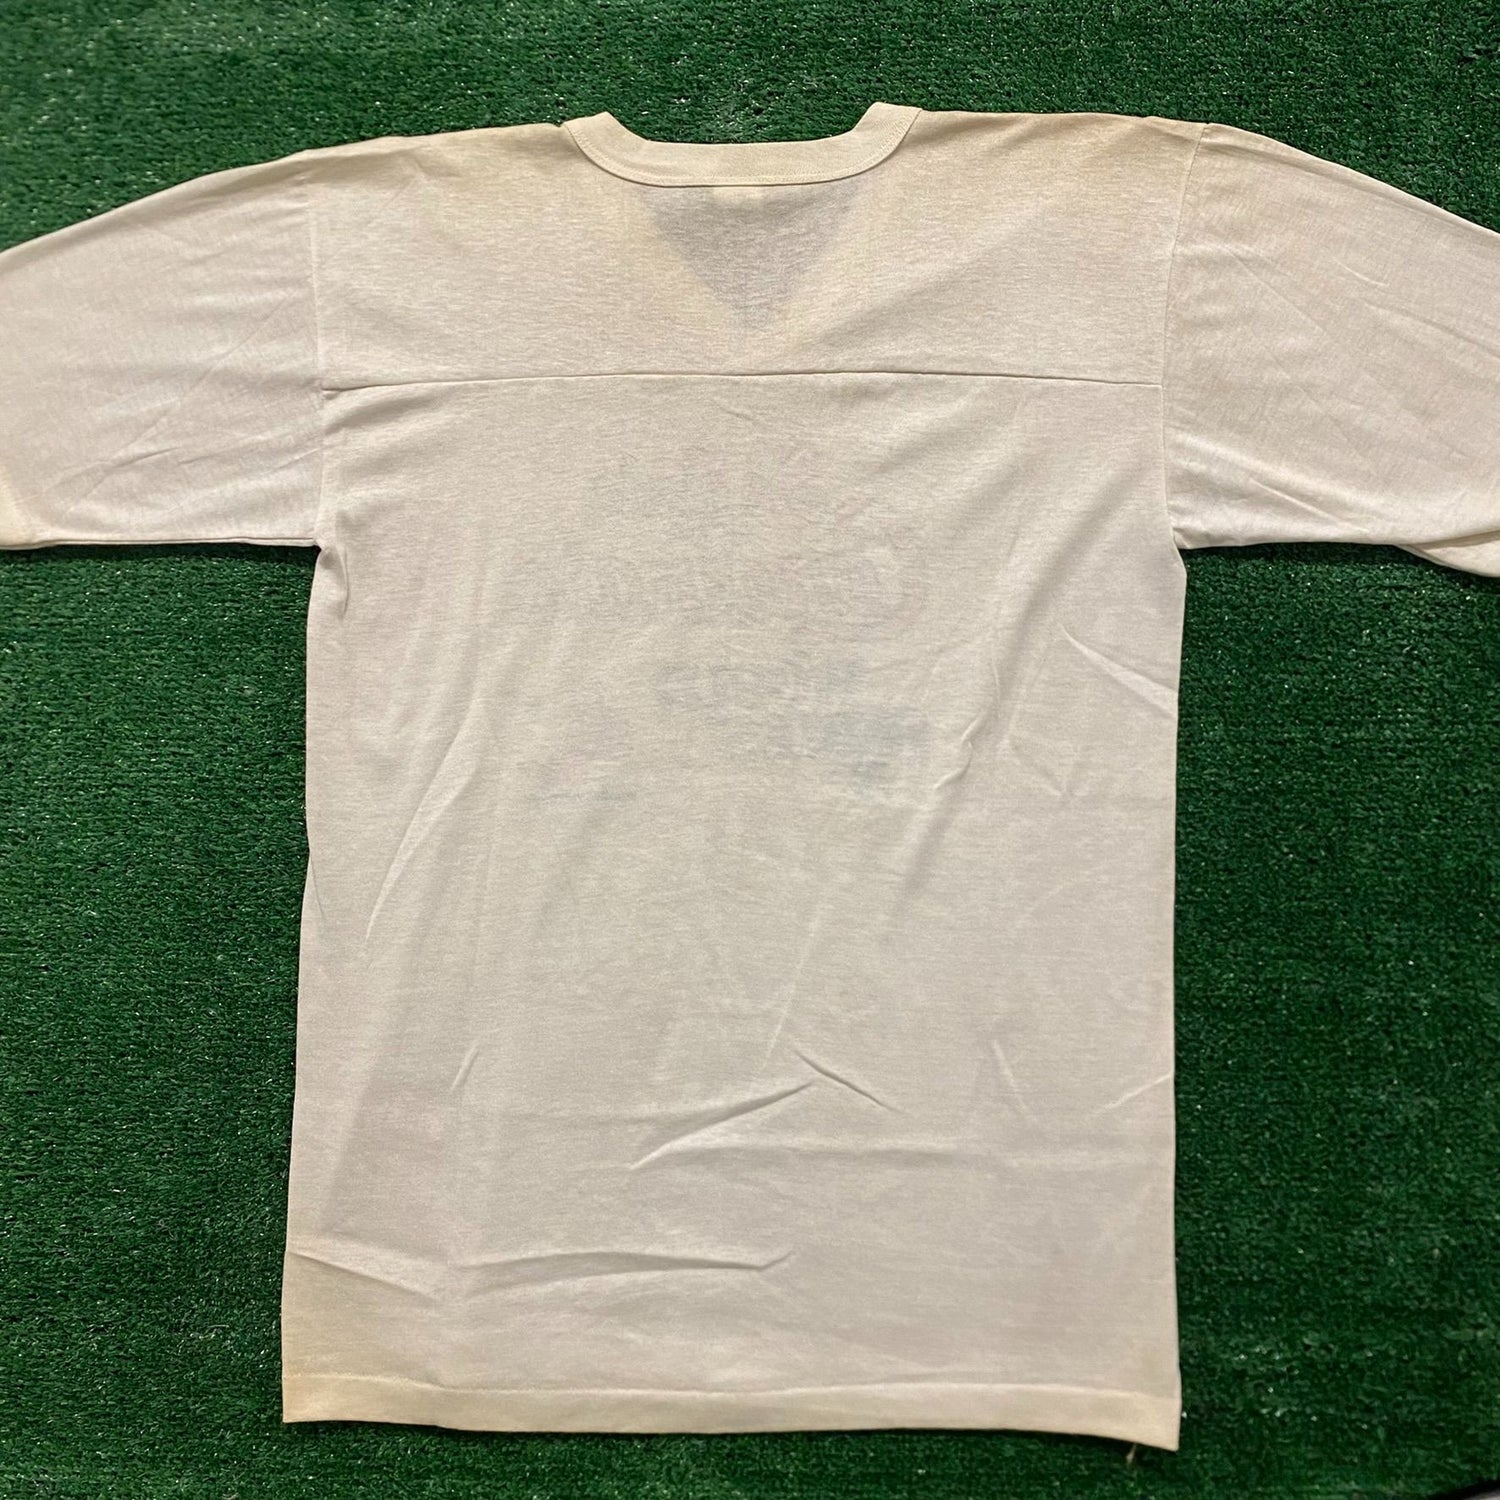 St. Louis Cardinals Baseball Vintage 80s T-Shirt – Agent Thrift